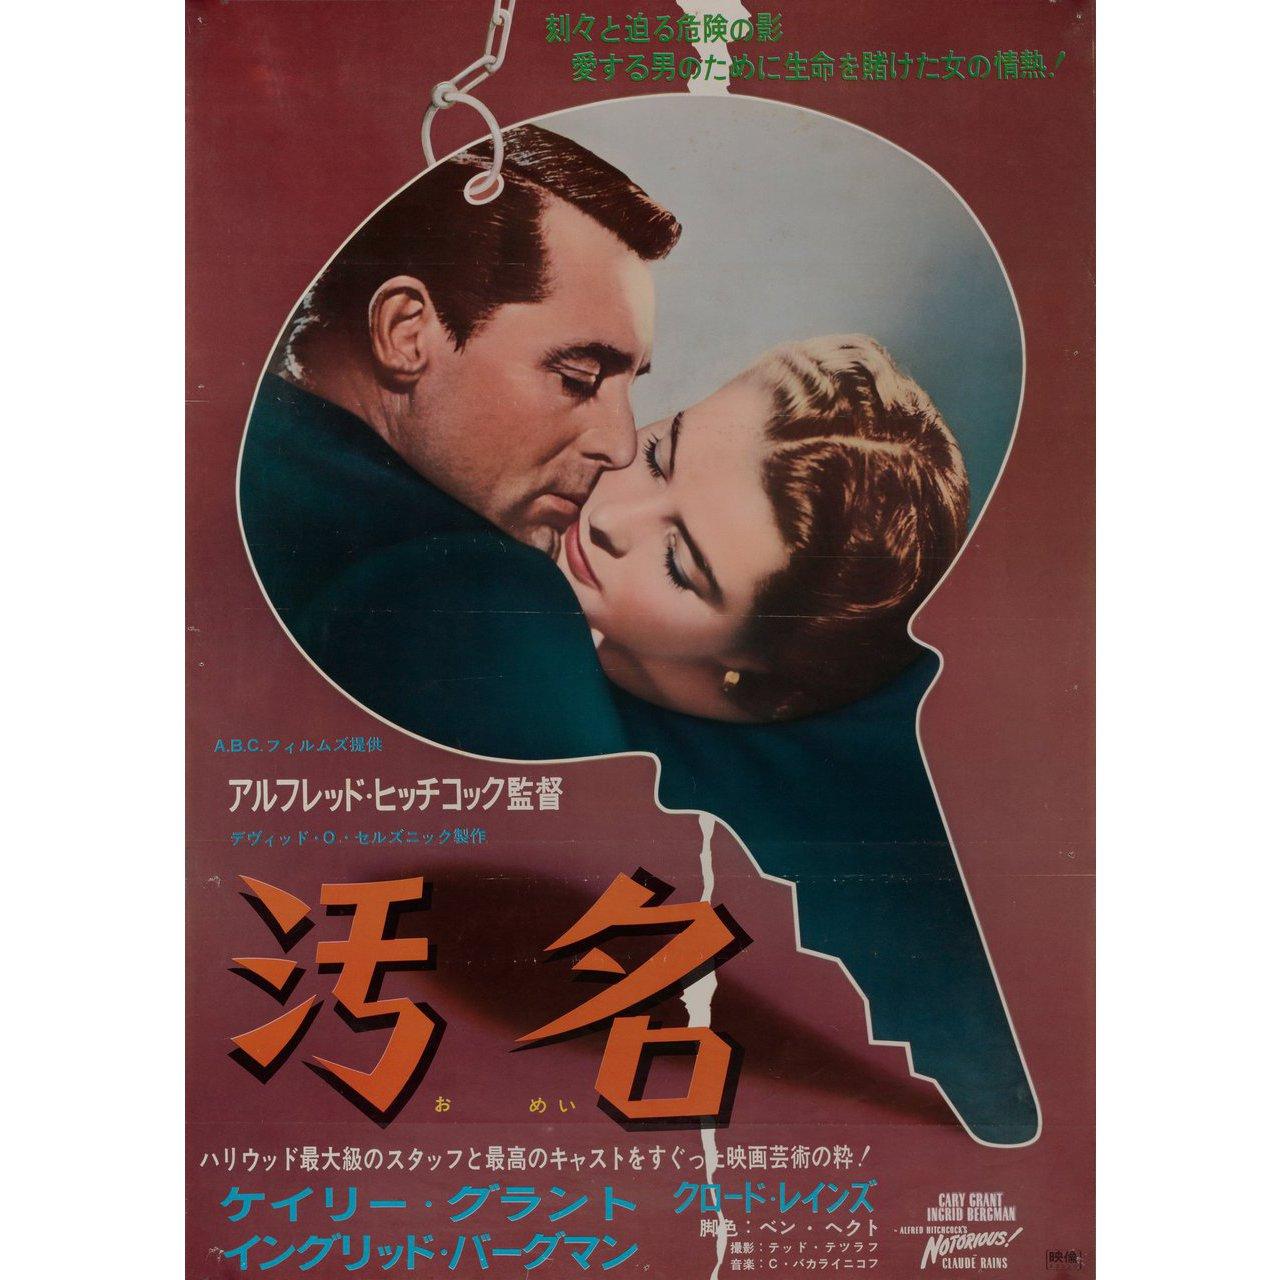 Originales japanisches B2-Plakat von 1967 für den Film Notorious von Alfred Hitchcock aus dem Jahr 1946 mit Cary Grant / Ingrid Bergman / Claude Rains / Louis Calhern. Sehr guter Zustand, gefaltet mit Nadellöchern und anderen Gebrauchsspuren. Viele